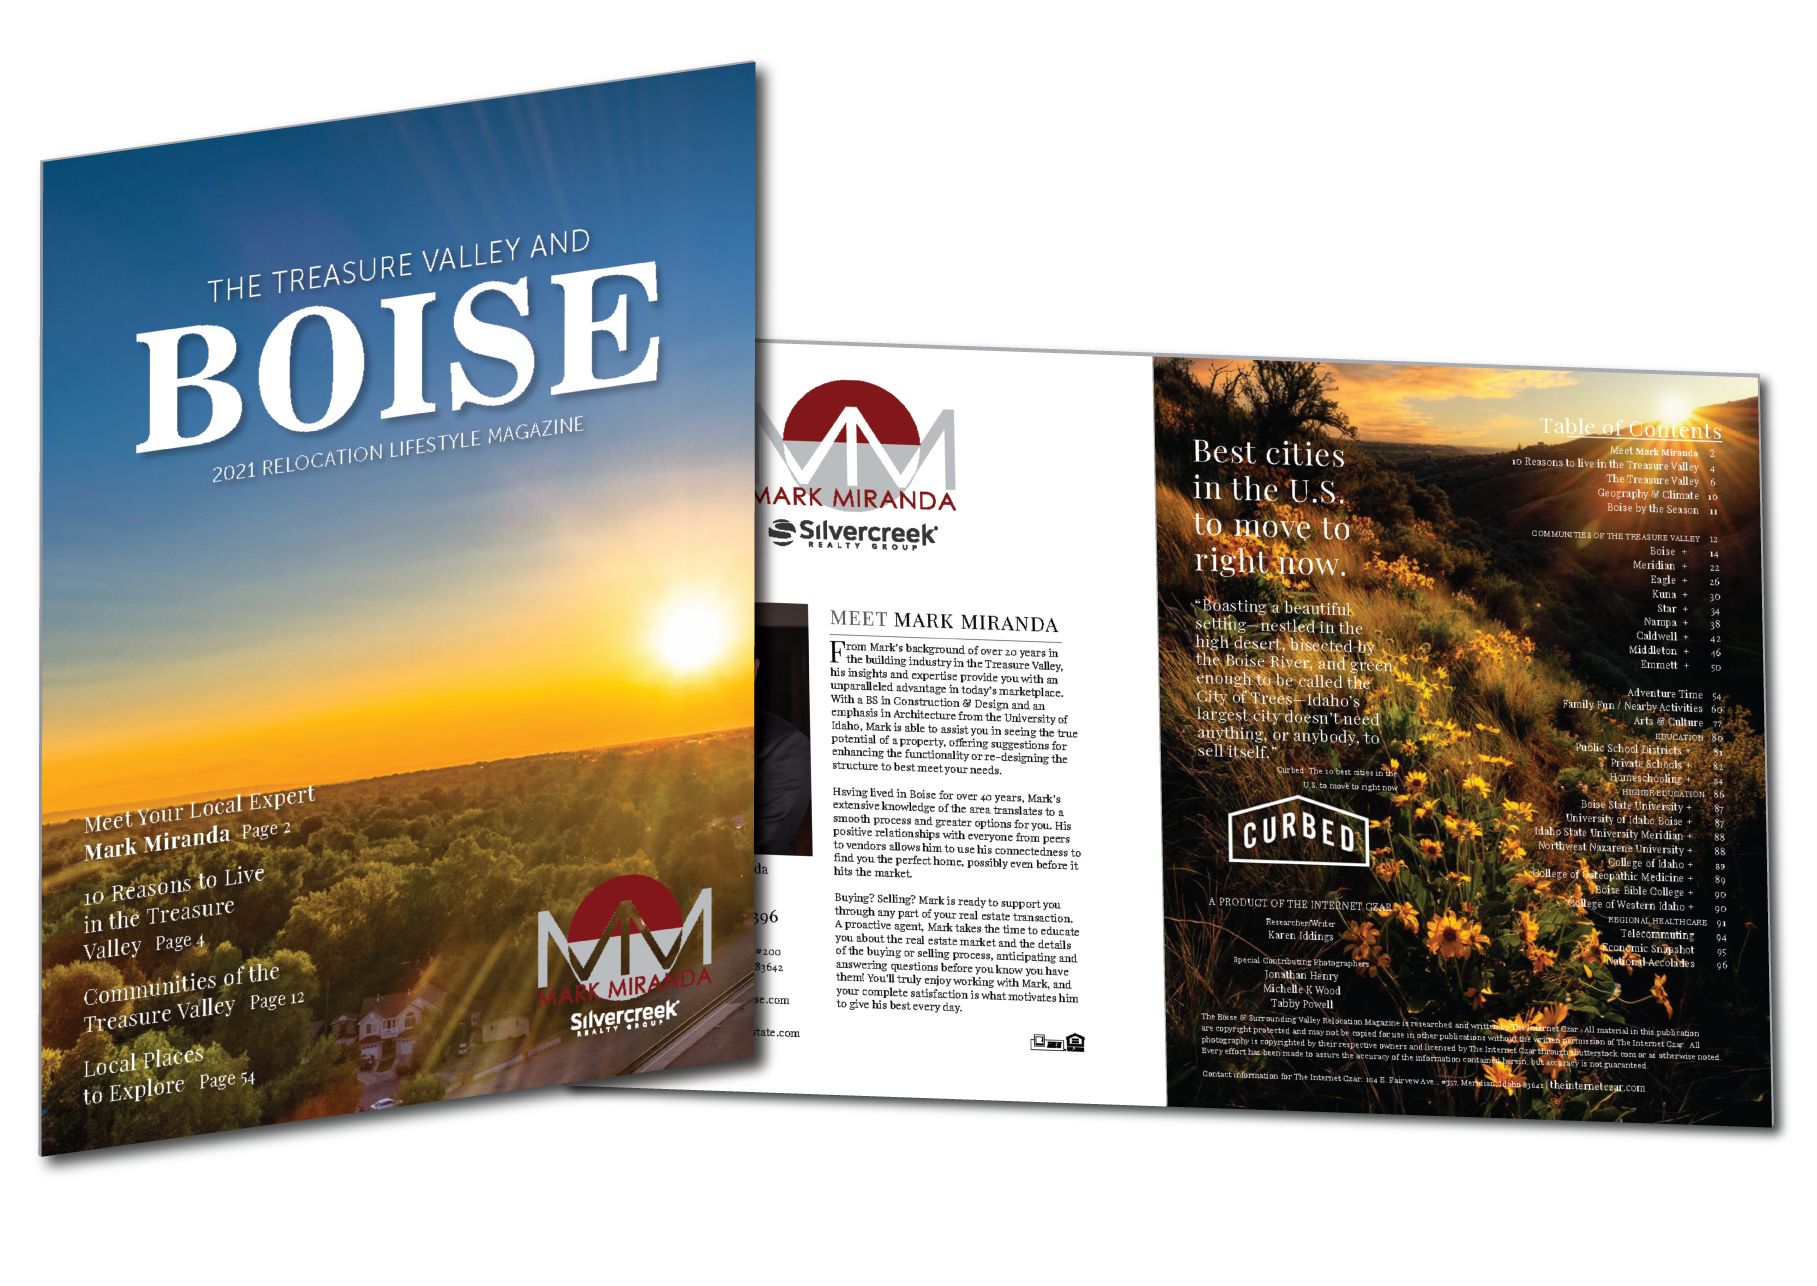 2021 Boise Relocation Lifestyle Magazine